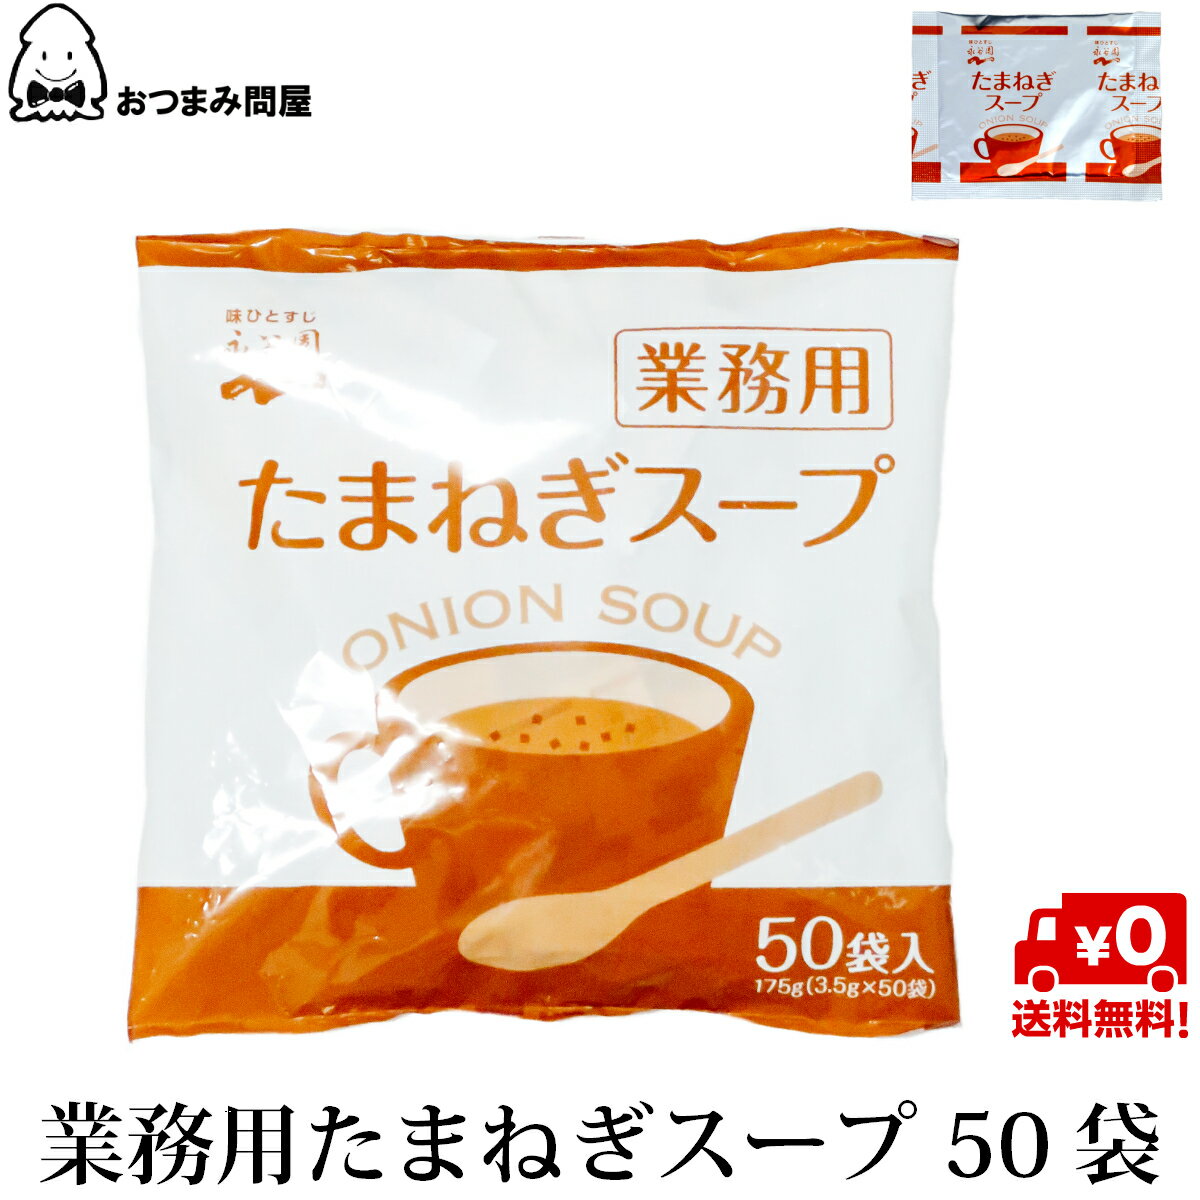 博屋 永谷園 たまねぎスープ (3.5g x 5